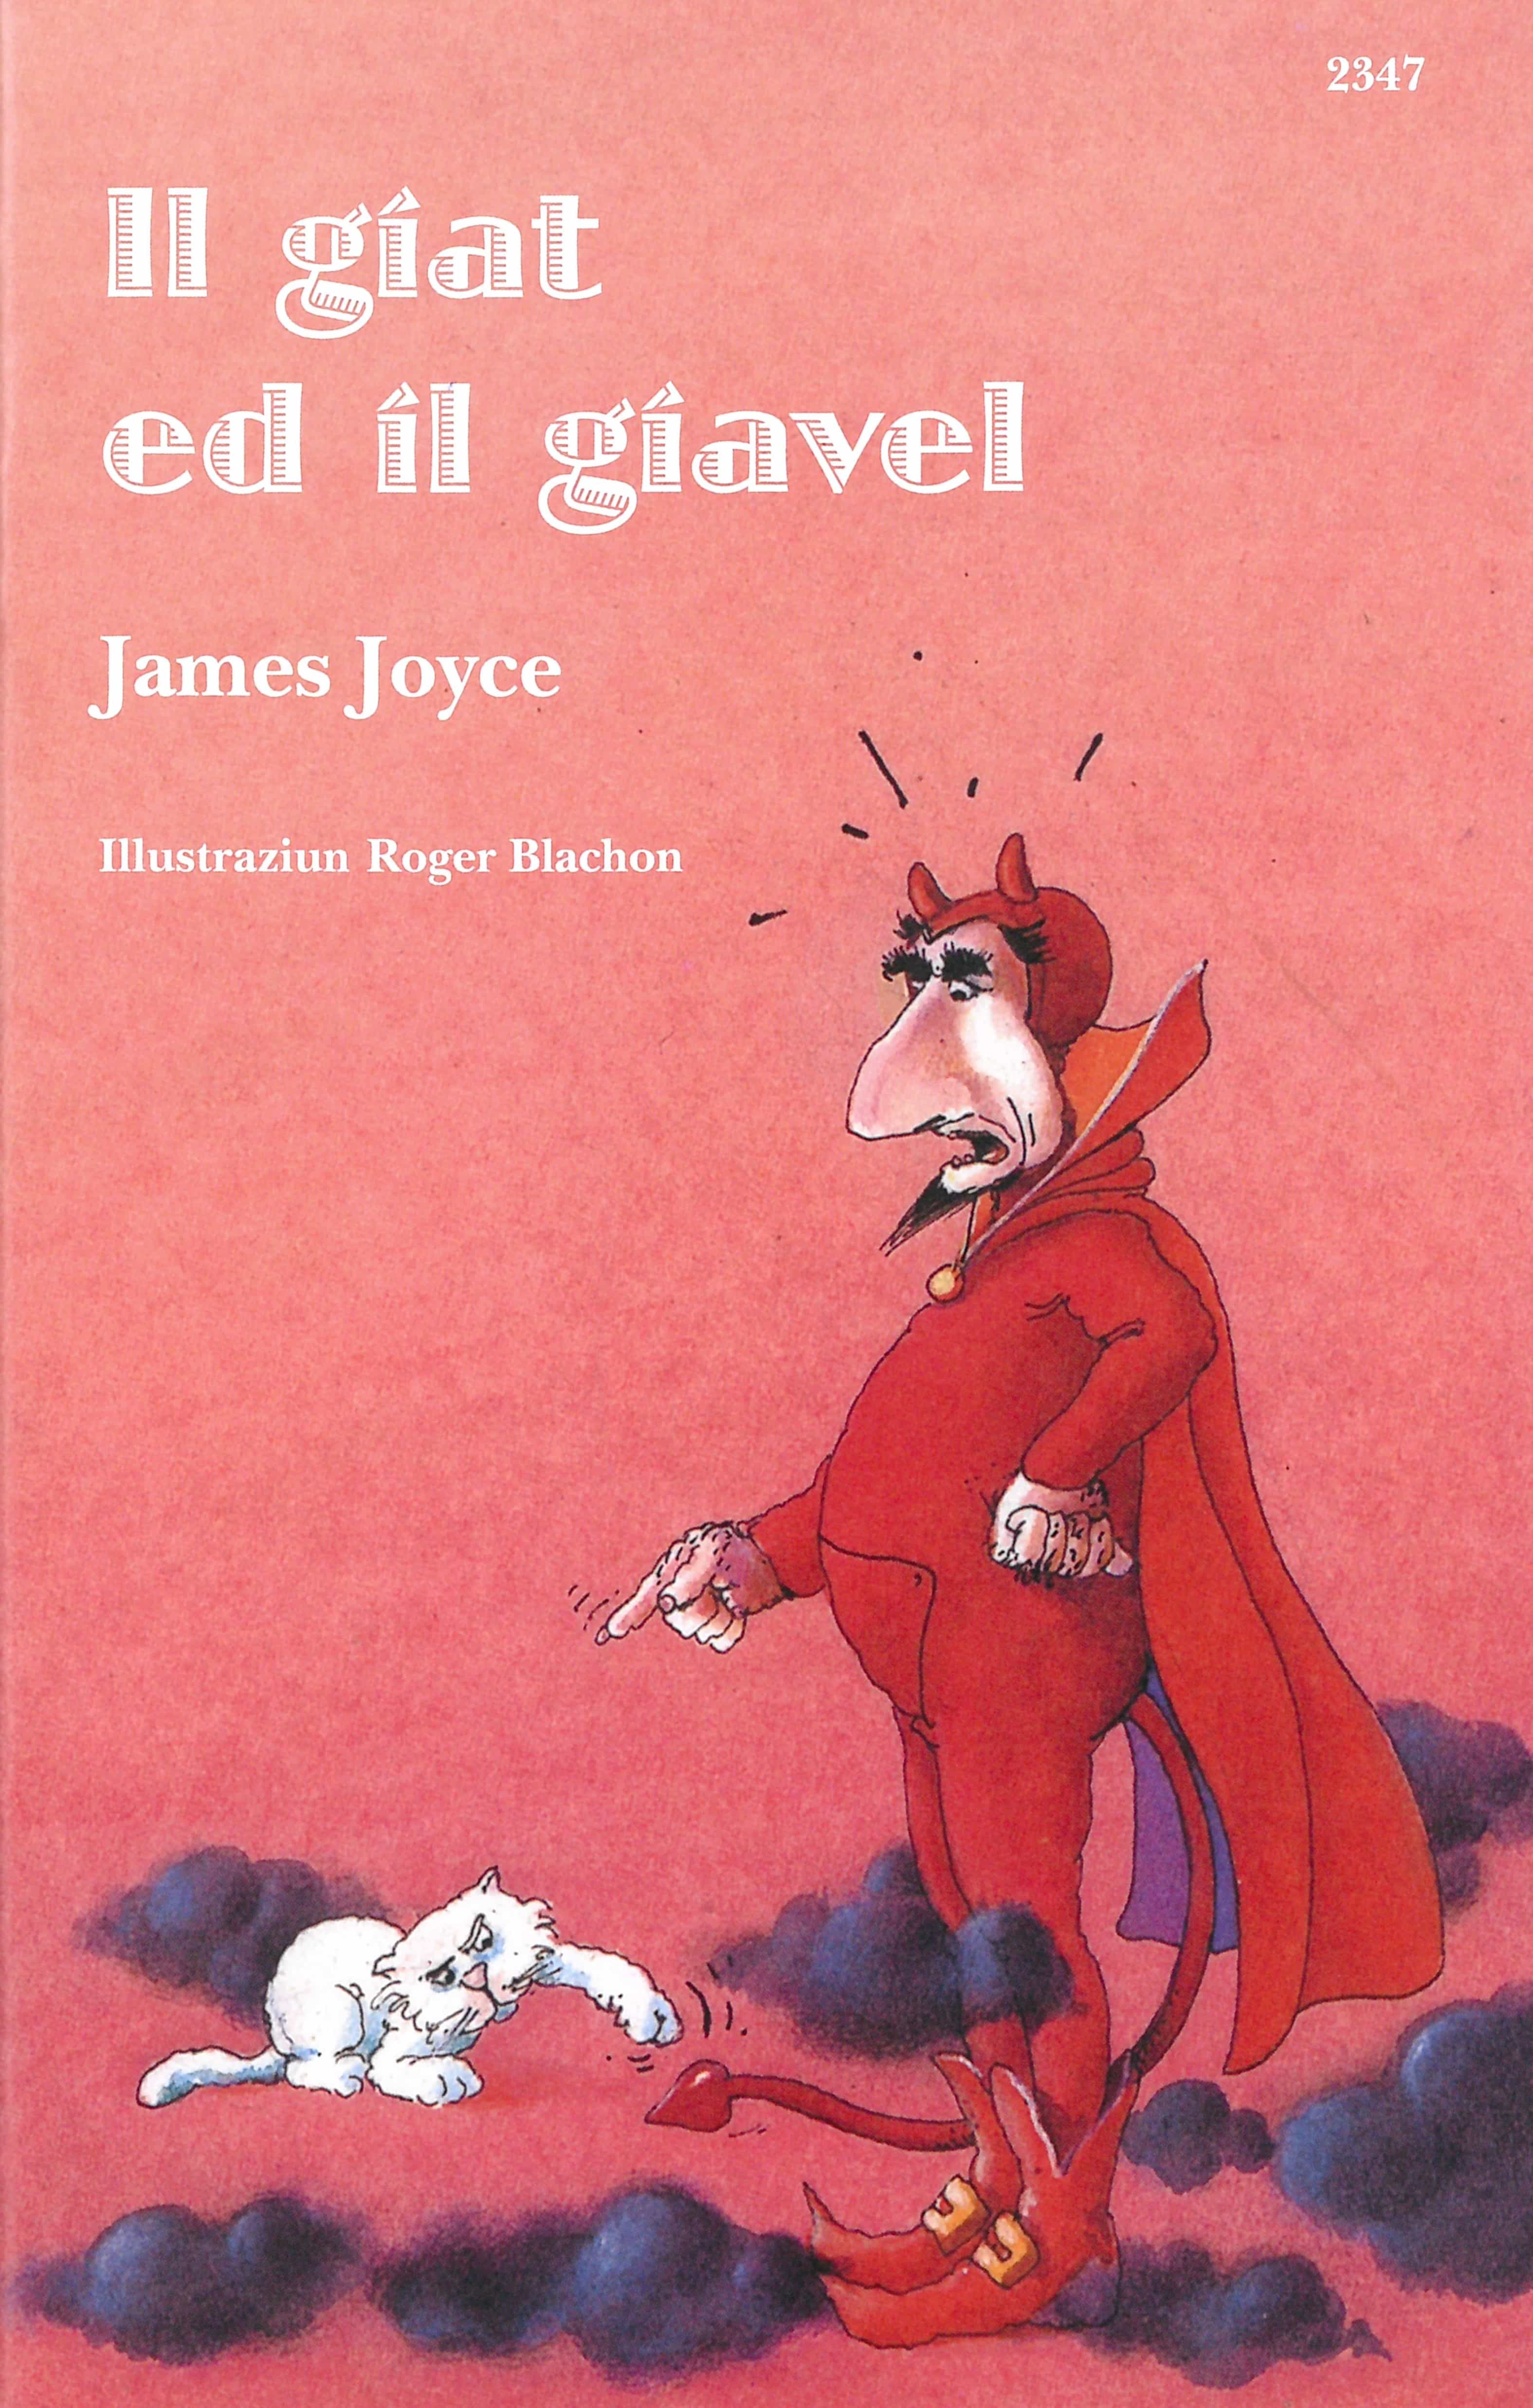 Il giat ed il giavel, ein Kinderbuch von James Joyce, Illustration von Roger Blachon, SJW Verlag, Sagen & Fabeln